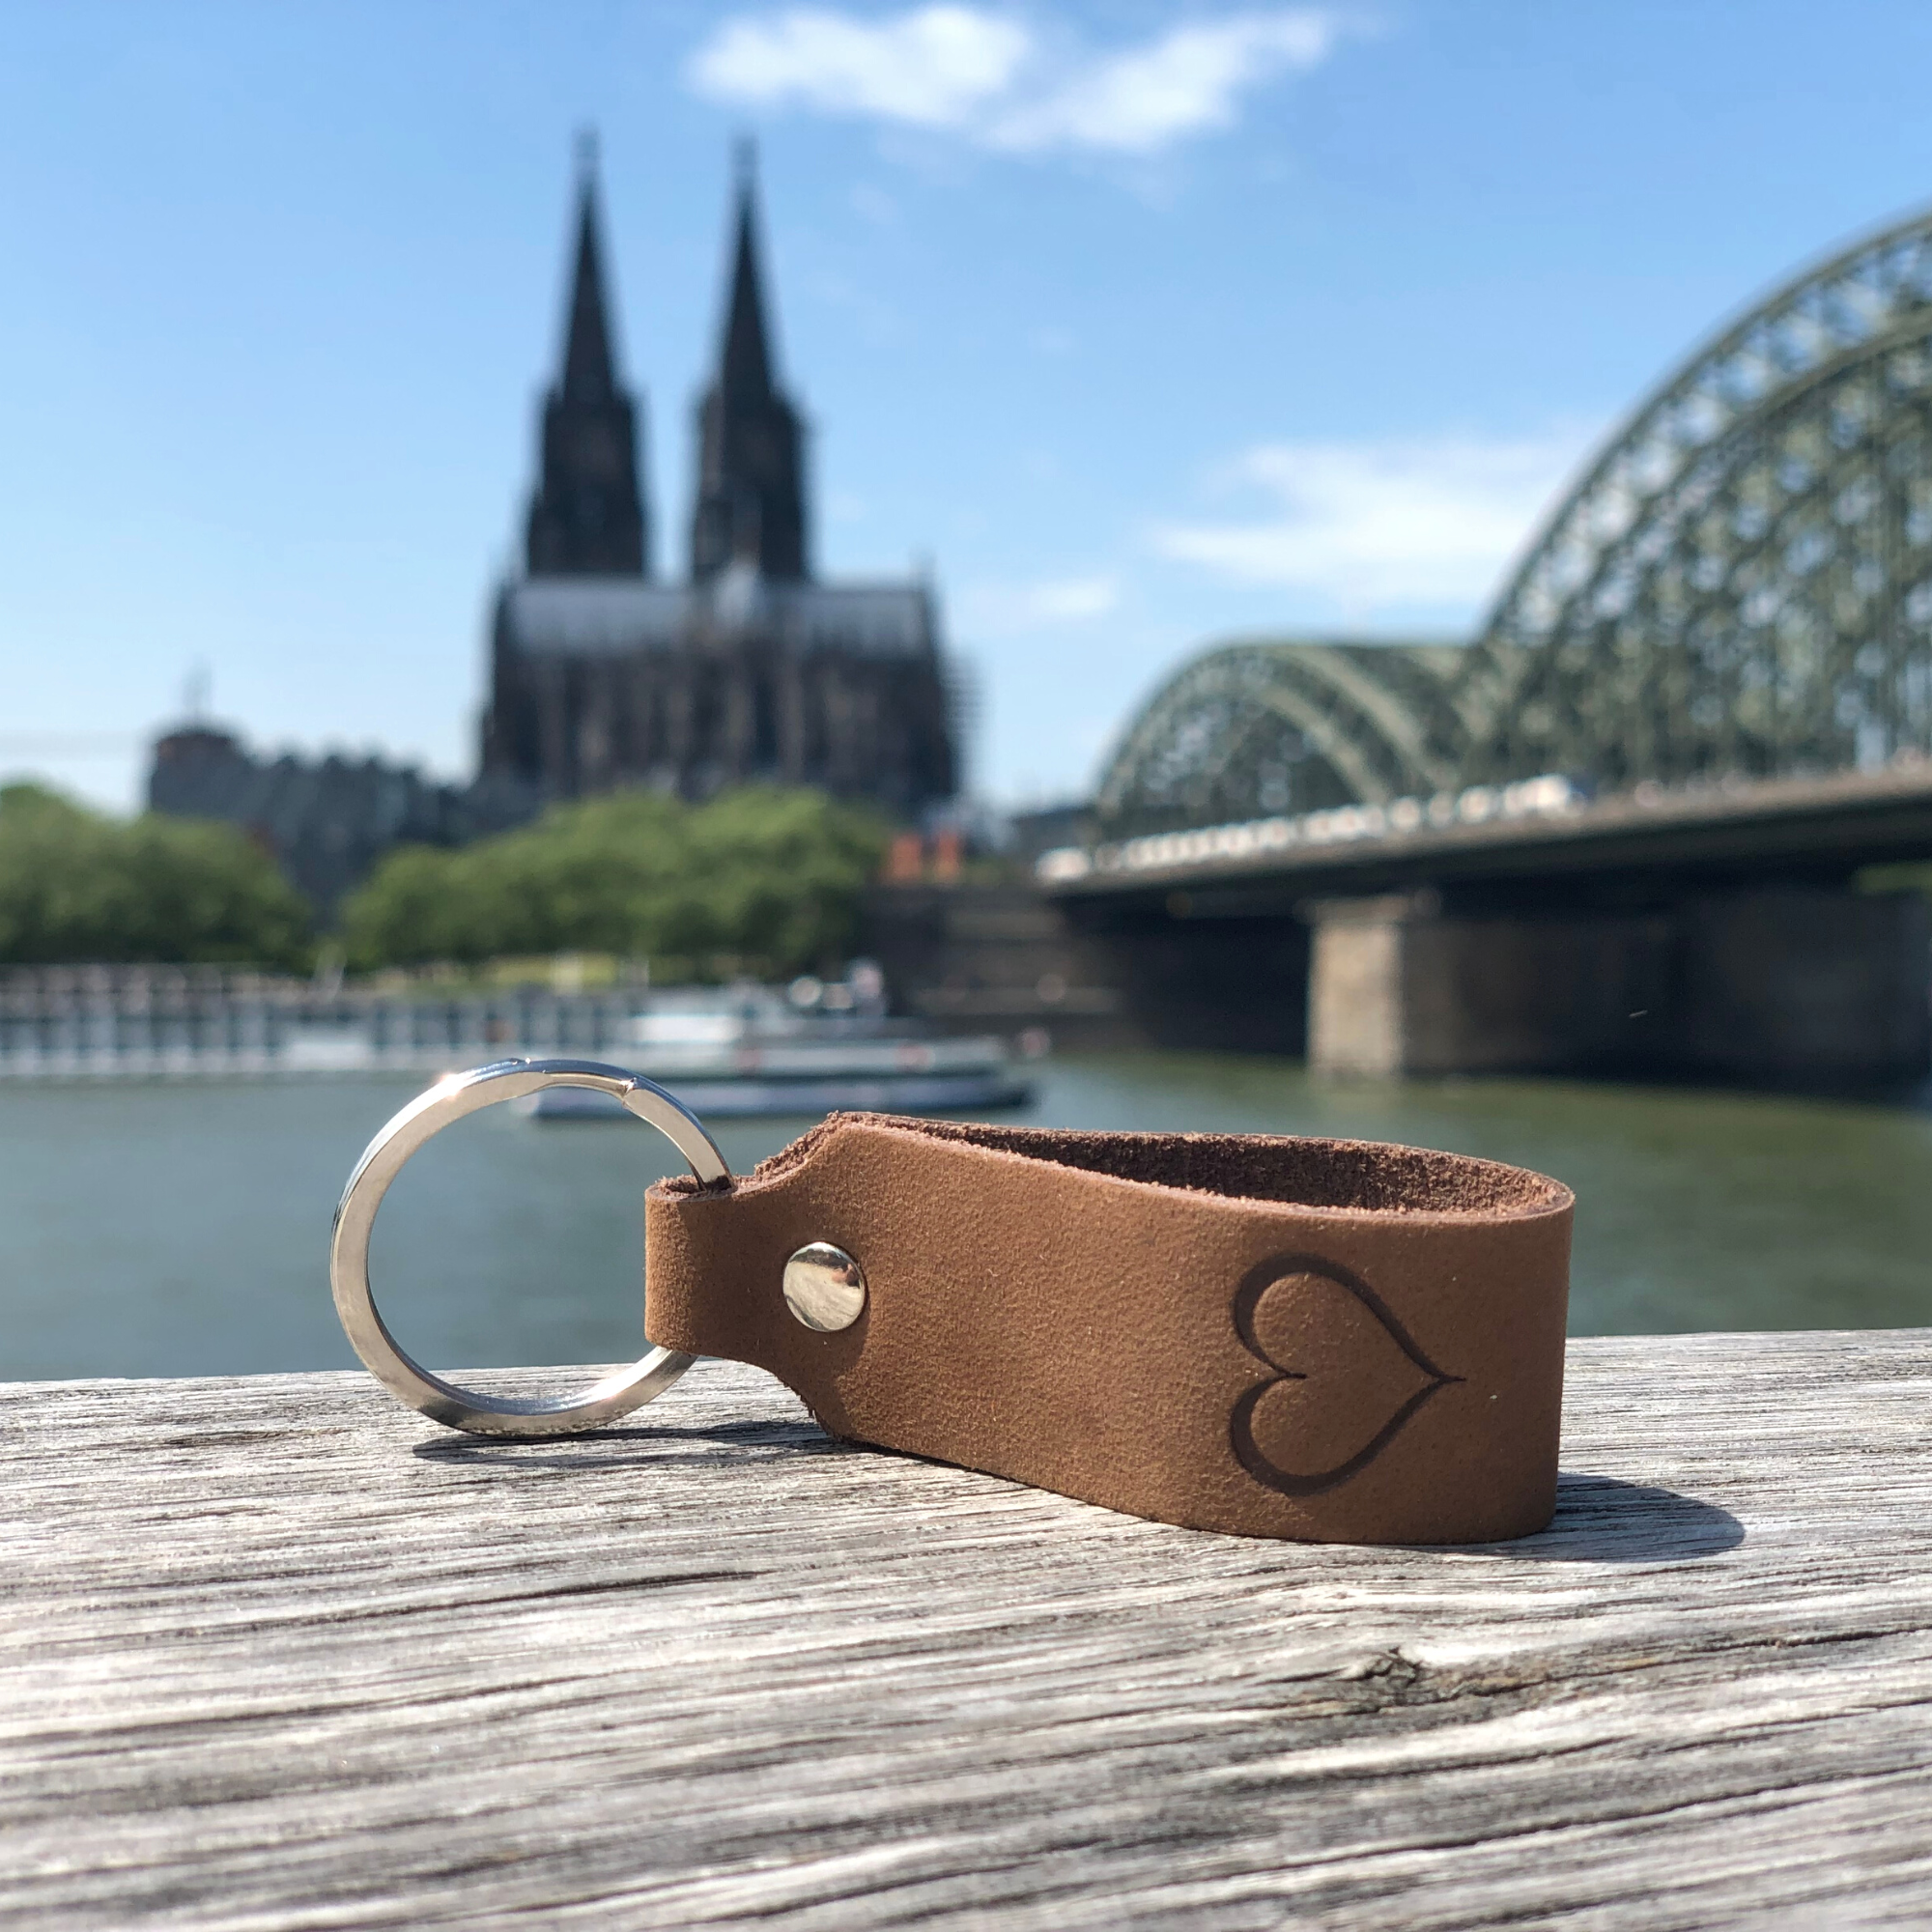 Schlüsselanhänger mit Gravur Herz liegt auf Holz am Rhein, im Hintergrund ist der Kölner Dom zu sehen